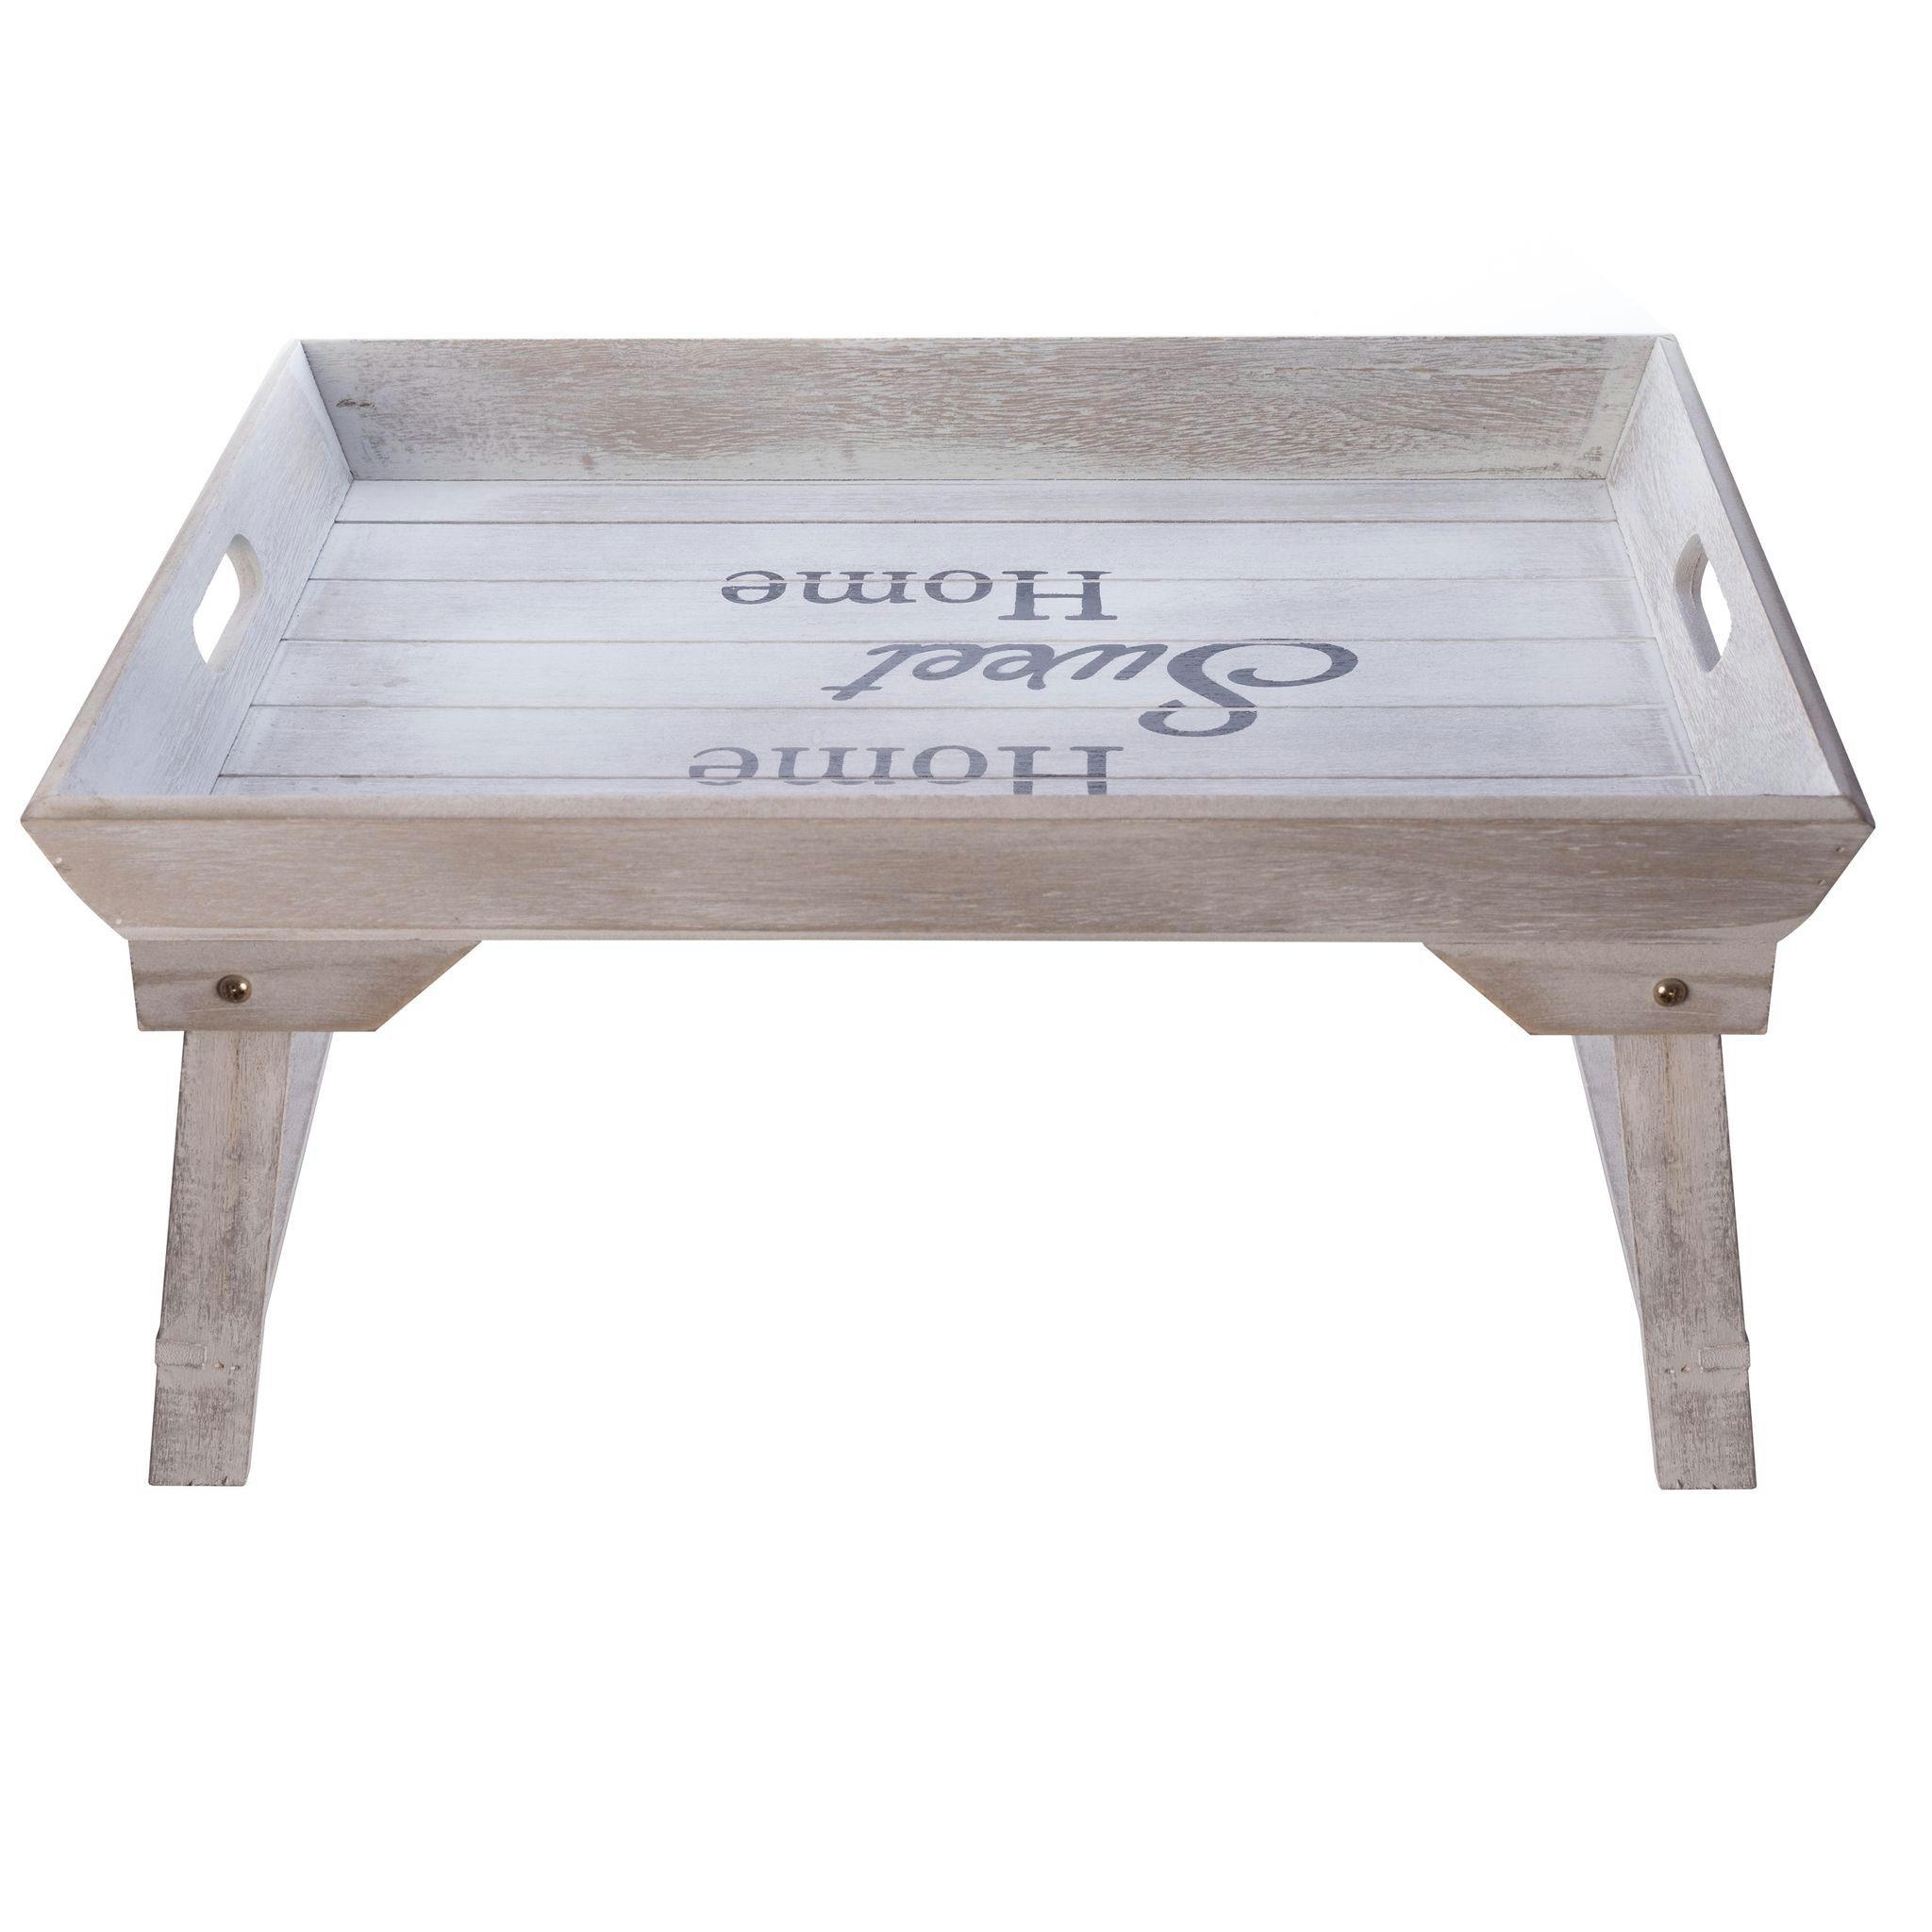 elbmöbel Tabletttisch Betttablett mit Fuß sweet Ablage Tabletttisch: (FALSCH), Landhausstil Home 48x26x32 cm grau Home